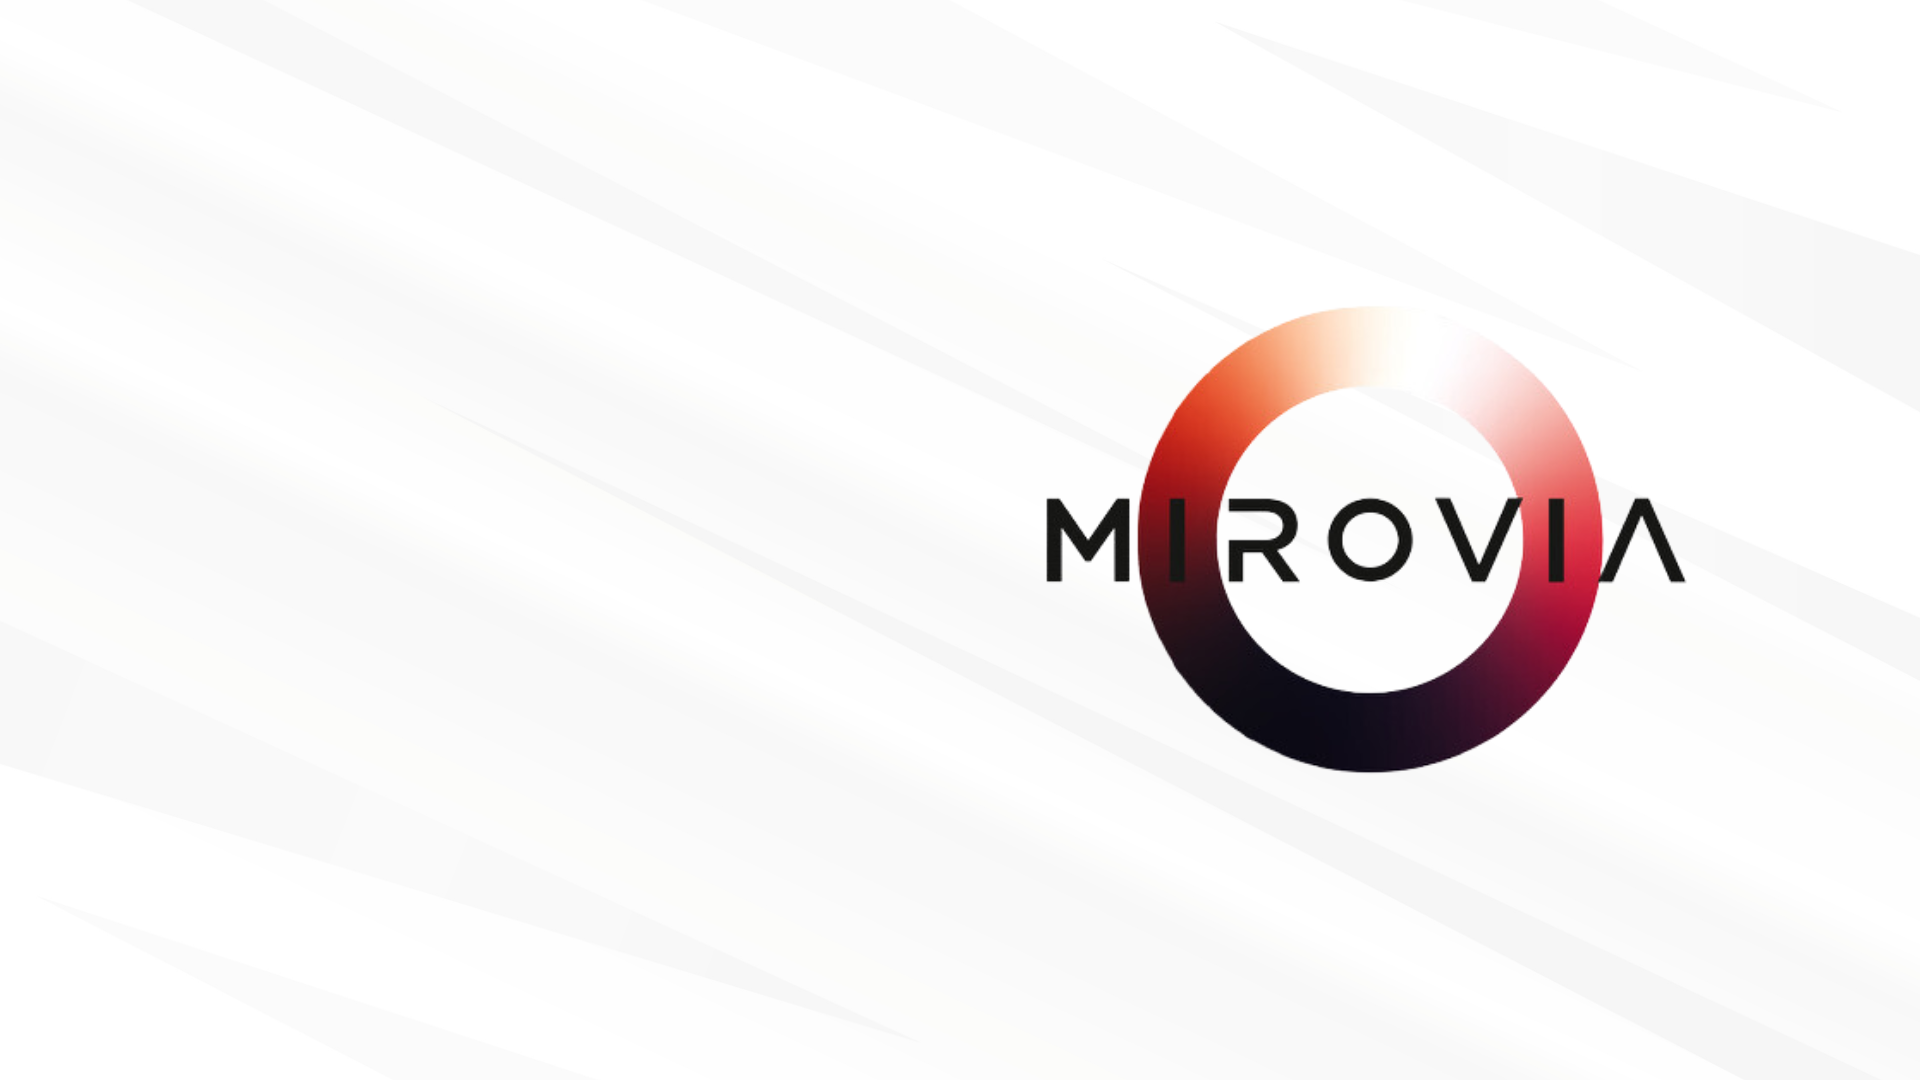 MIROVIA annuncia l’ingresso di Commwiser e Consultants e TriOn & Co